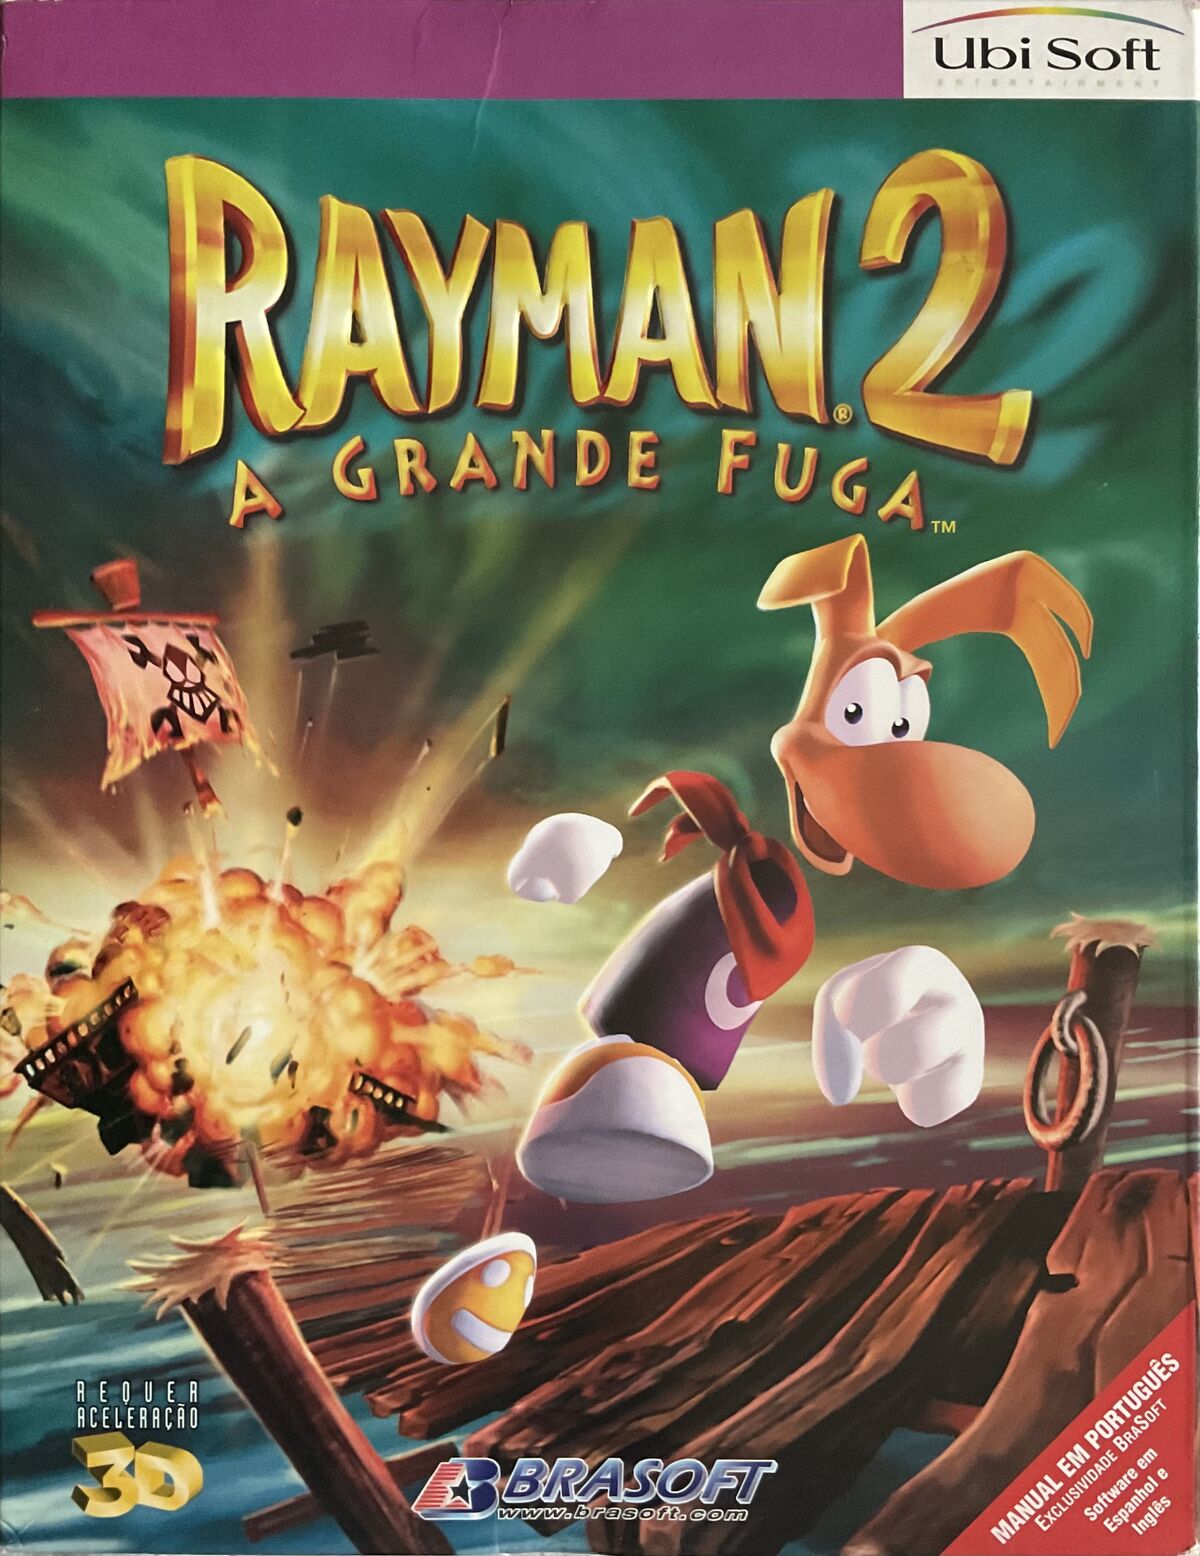 Rayman: do pior ao melhor segundo a crítica